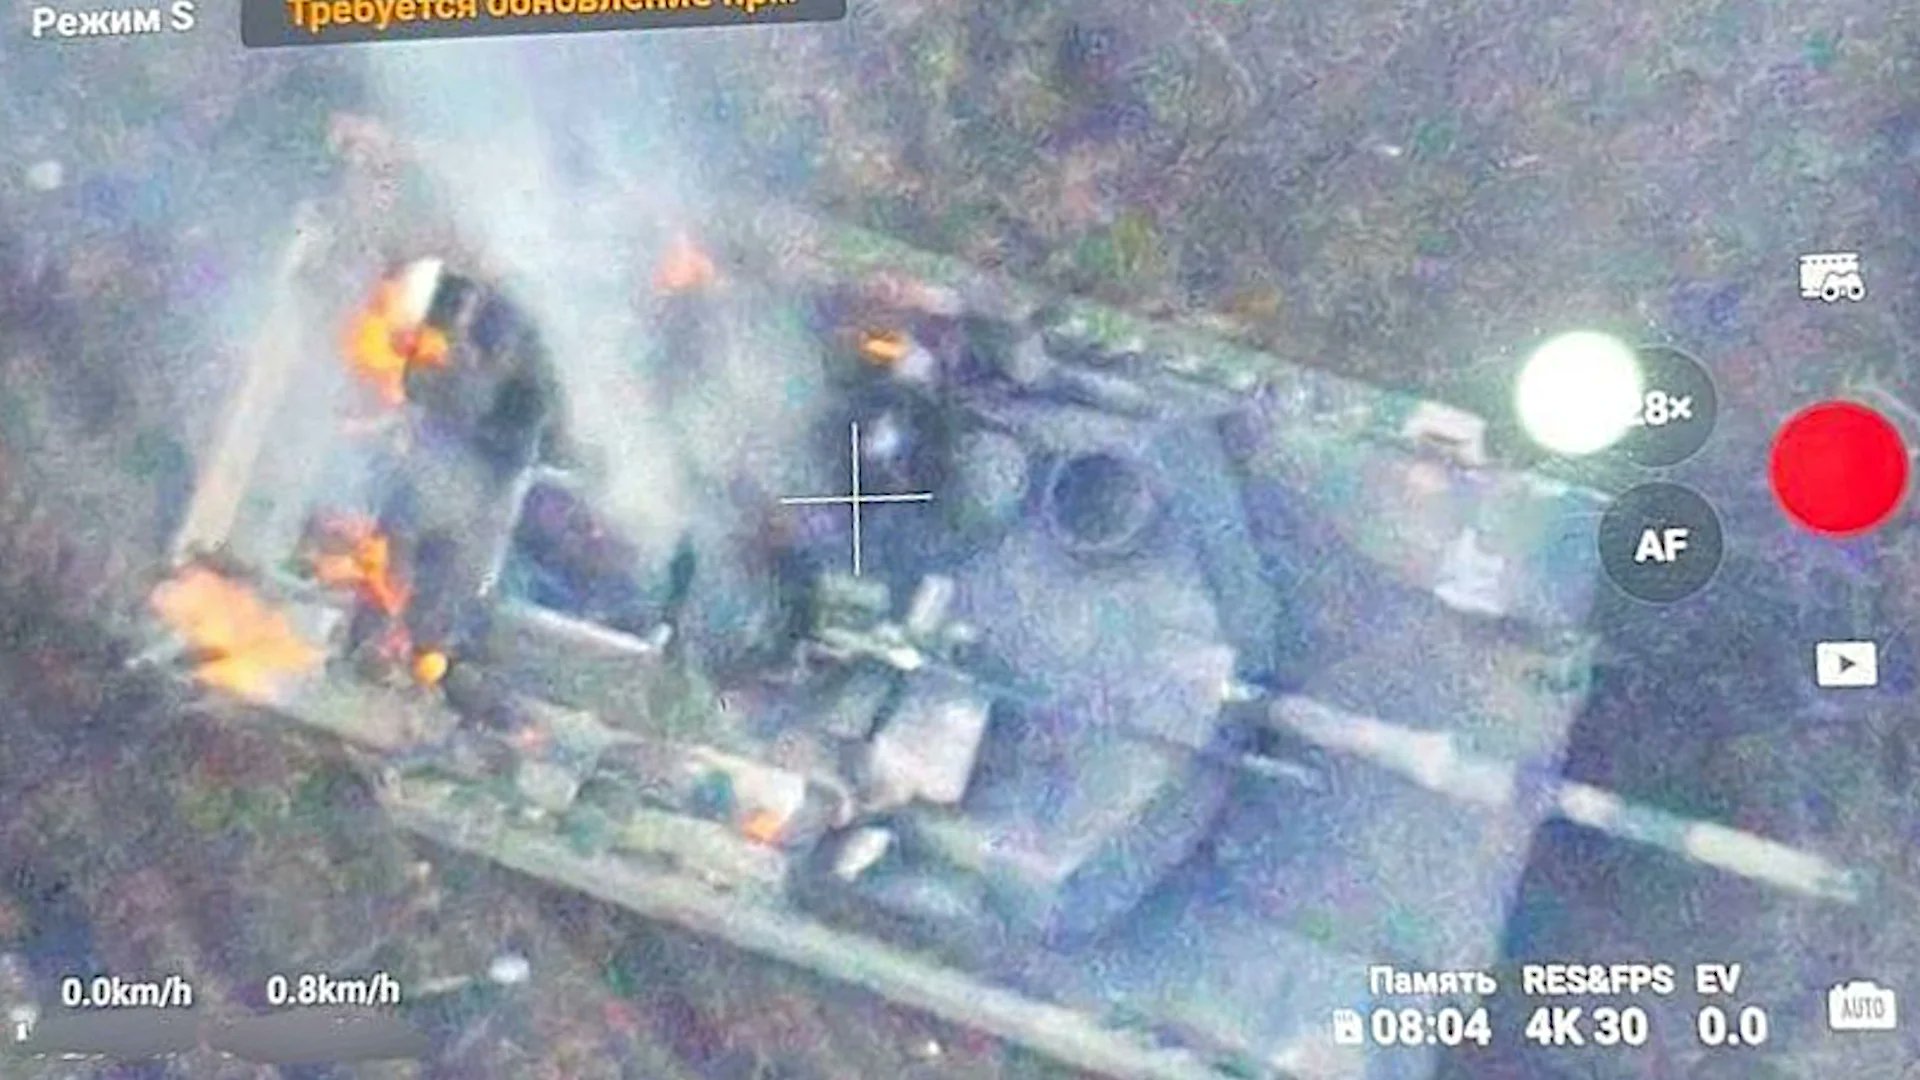 أداء دبابات Abrams الامريكية الصنع في الحرب الروسية/-الاوكرانية .......متجدد GME8ILvWsAA_I5g?format=jpg&name=large